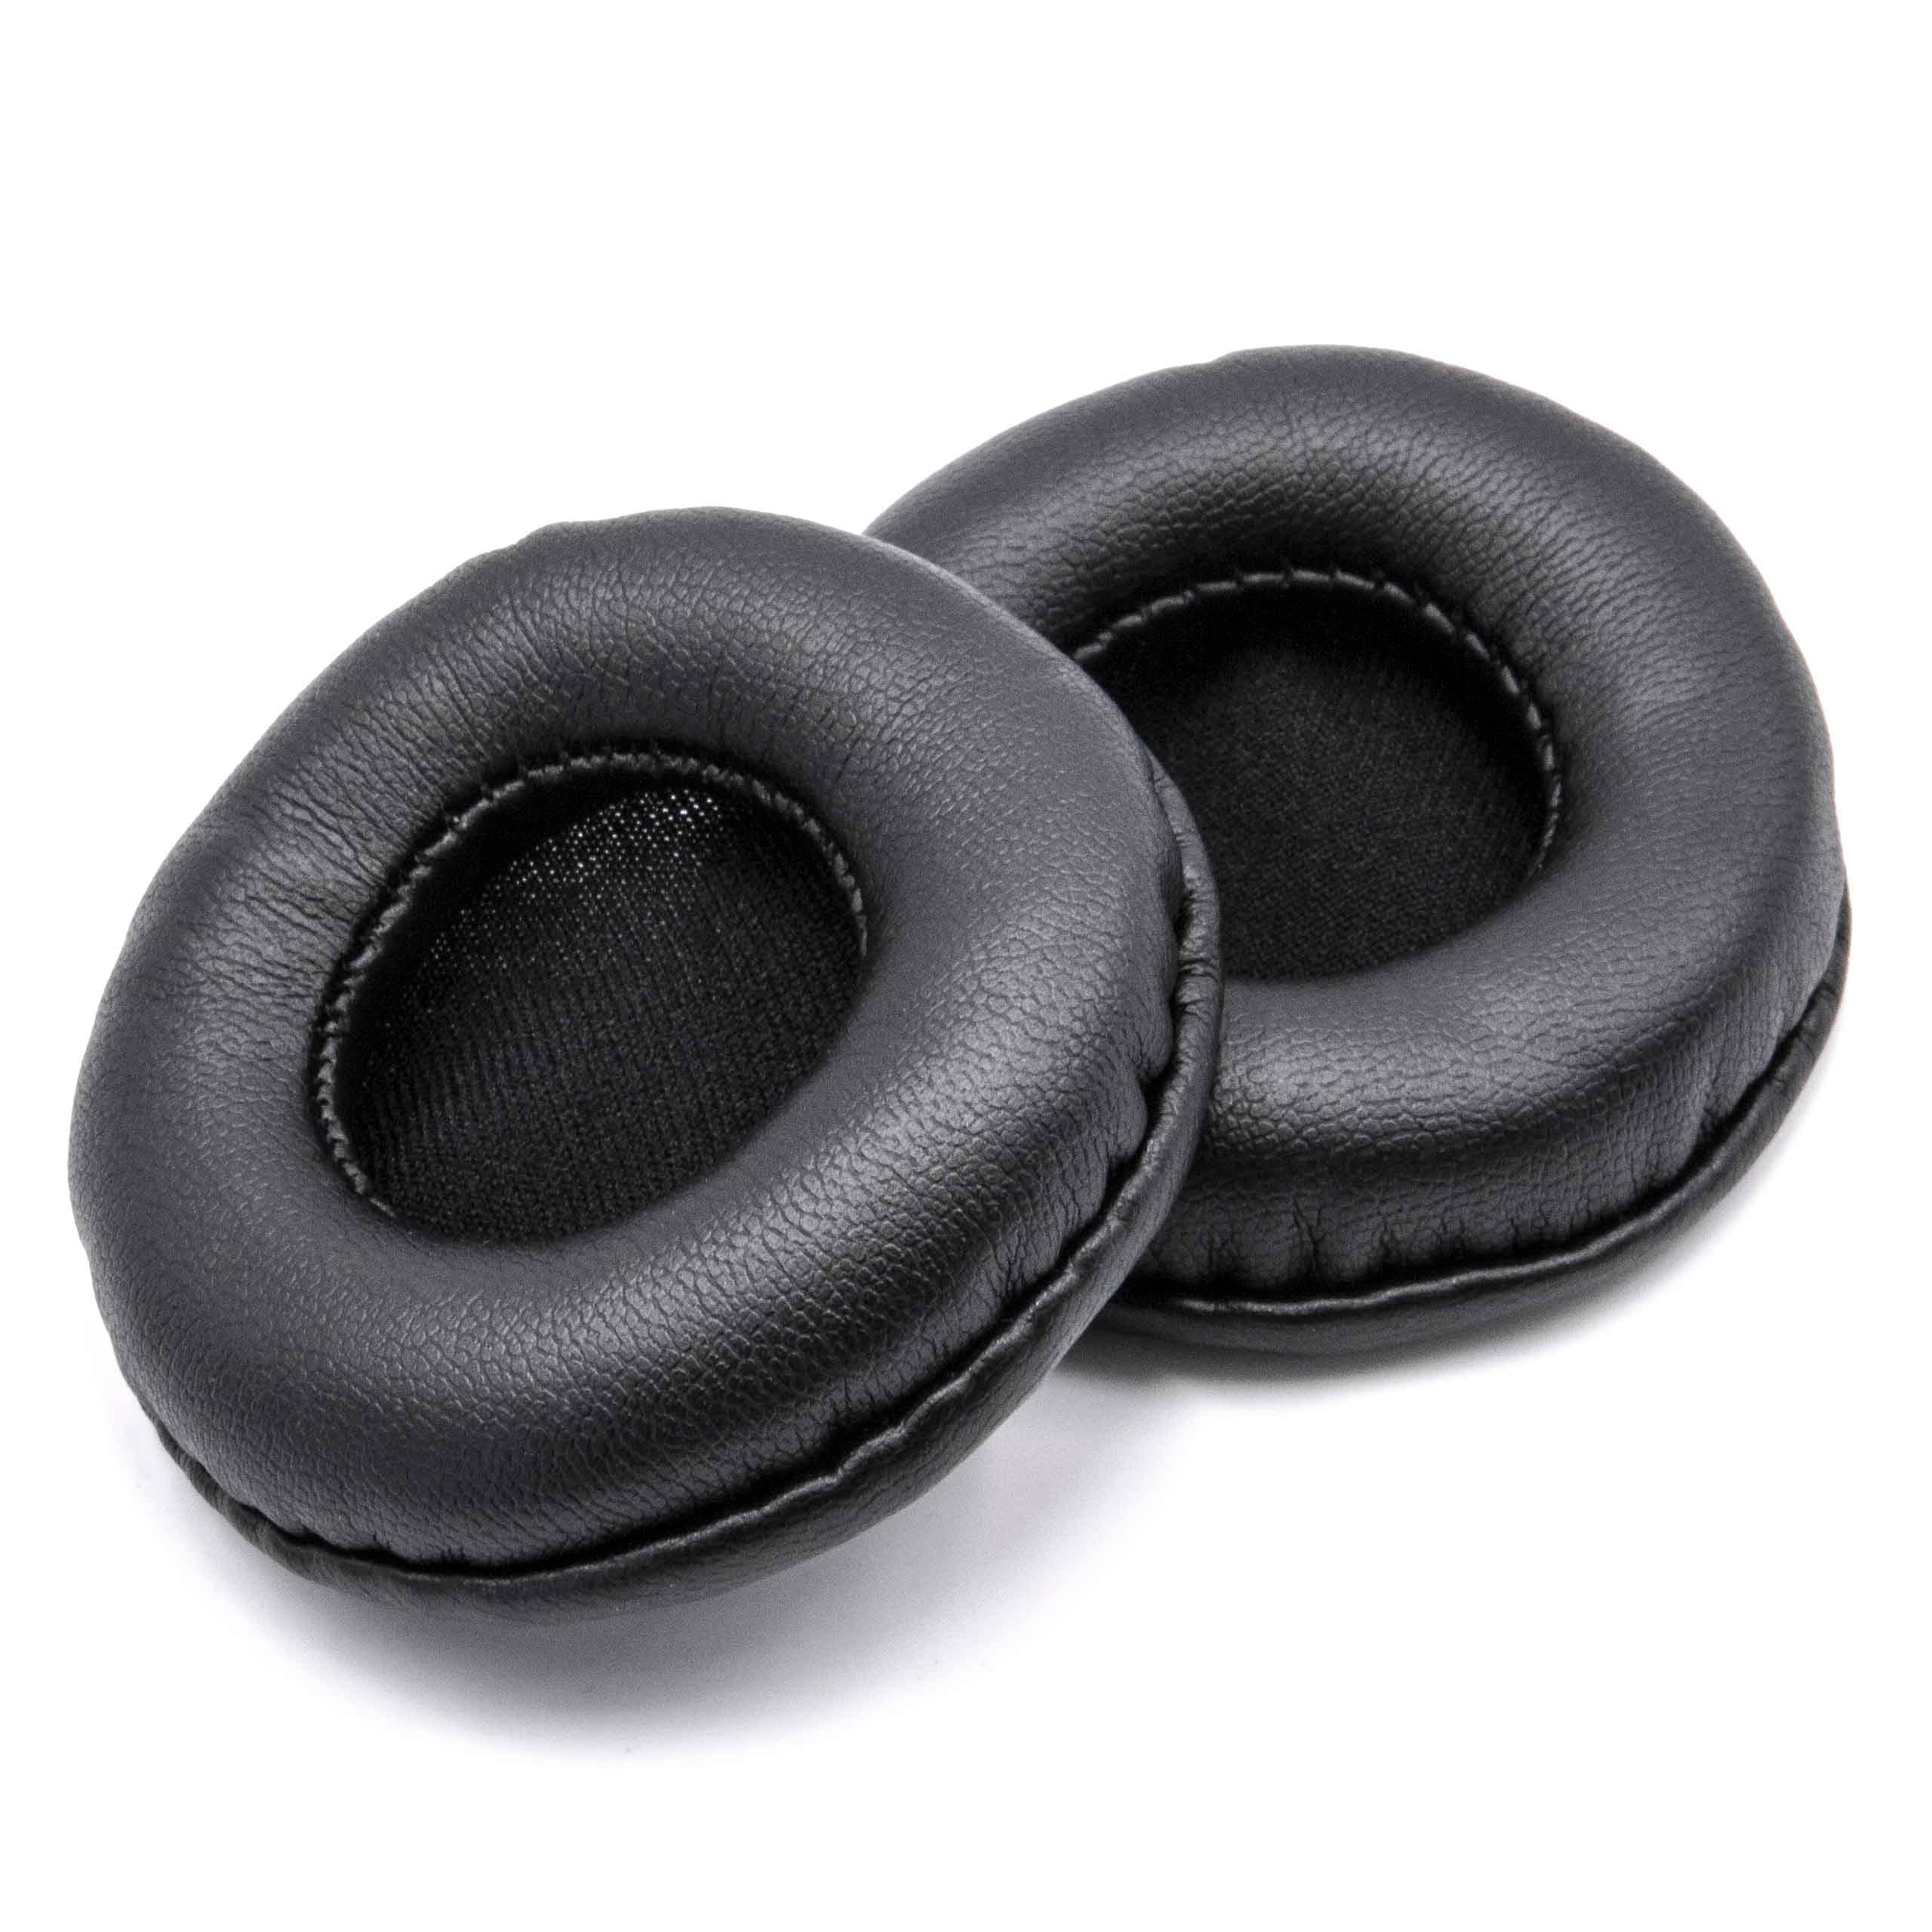 2x Coussinets d'oreille 60cm pour casque ATH / écouteurs nécessitant des coussinets de 60 mm / Sony ES55 et au